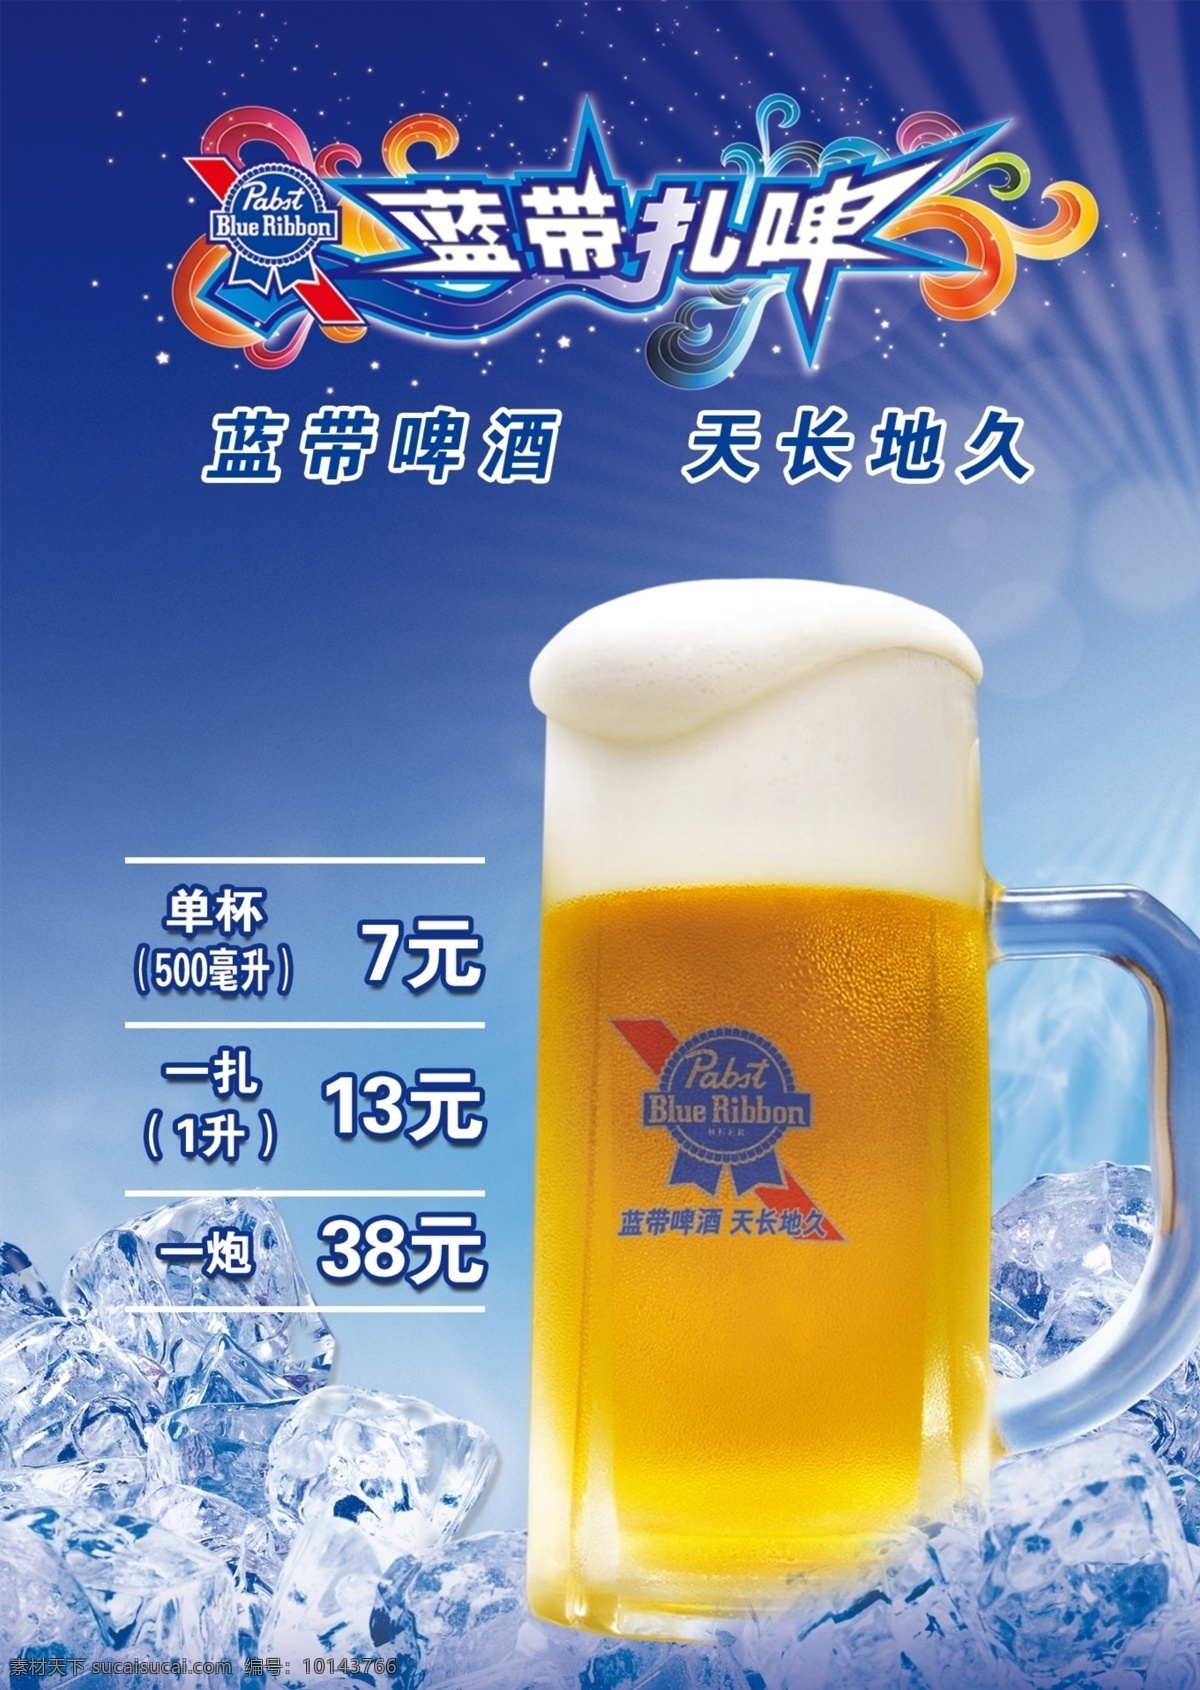 蓝带啤酒 蓝带 啤酒 天长地久 冰块 冰爽背景 啤酒杯 蓝色背景 光芒 广告设计模板 源文件